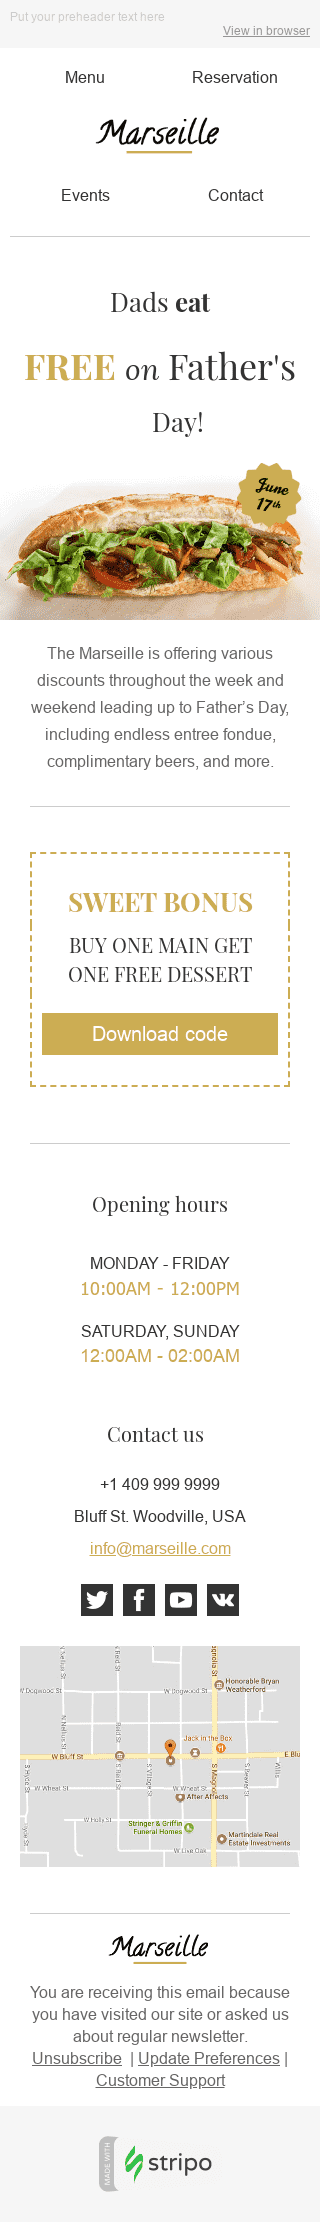 Plantilla de correo electrónico "Bonificación dulce" de Día del Padre para la industria de Restaurantes Vista de móvil